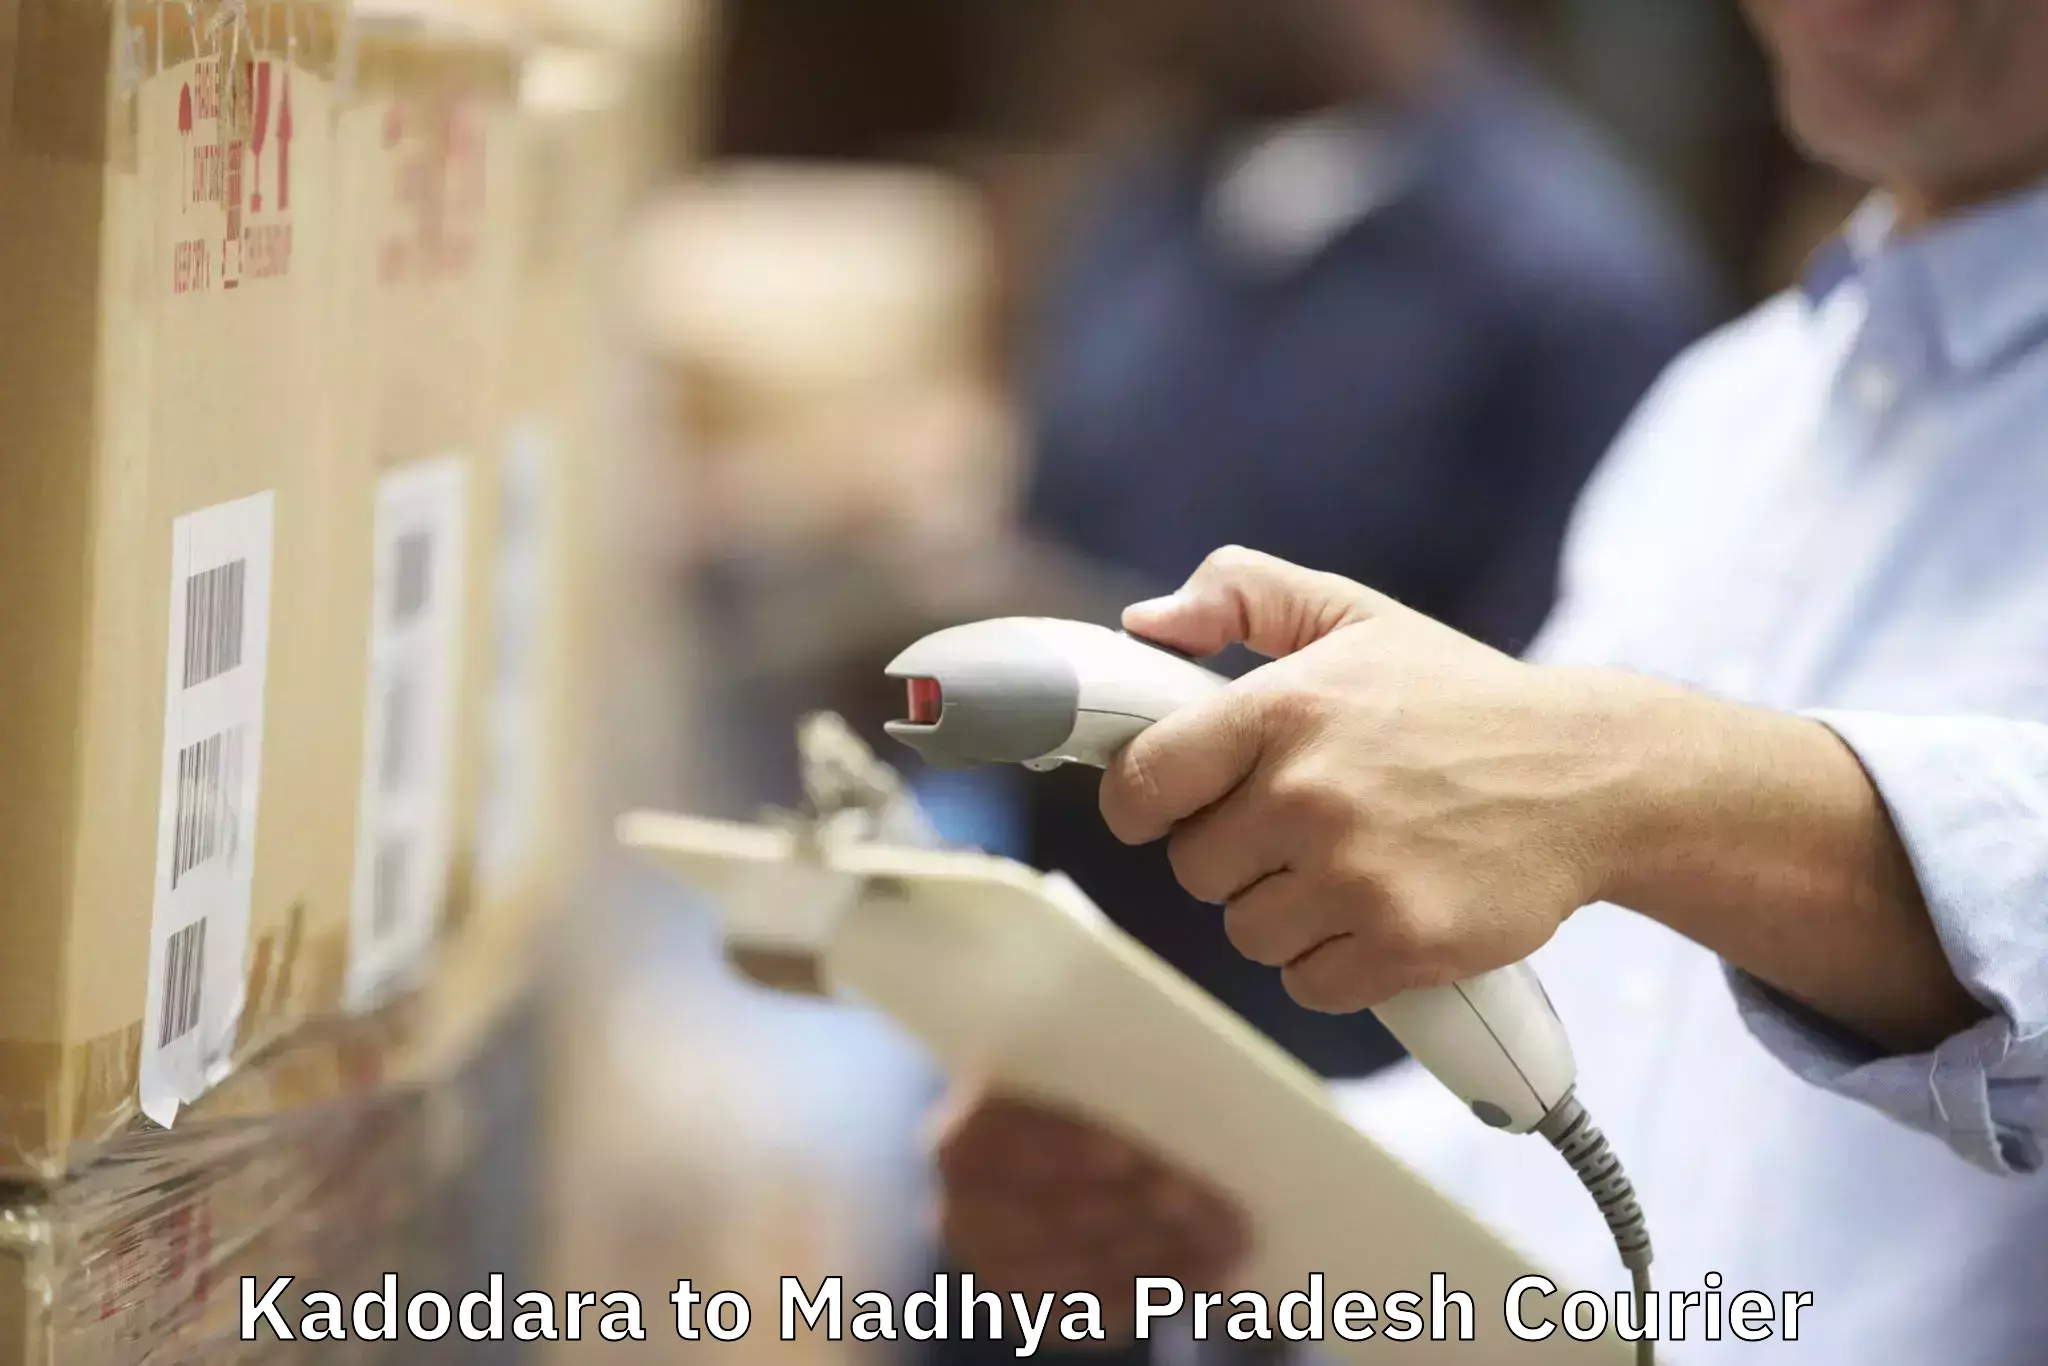 Furniture moving assistance Kadodara to Madhya Pradesh